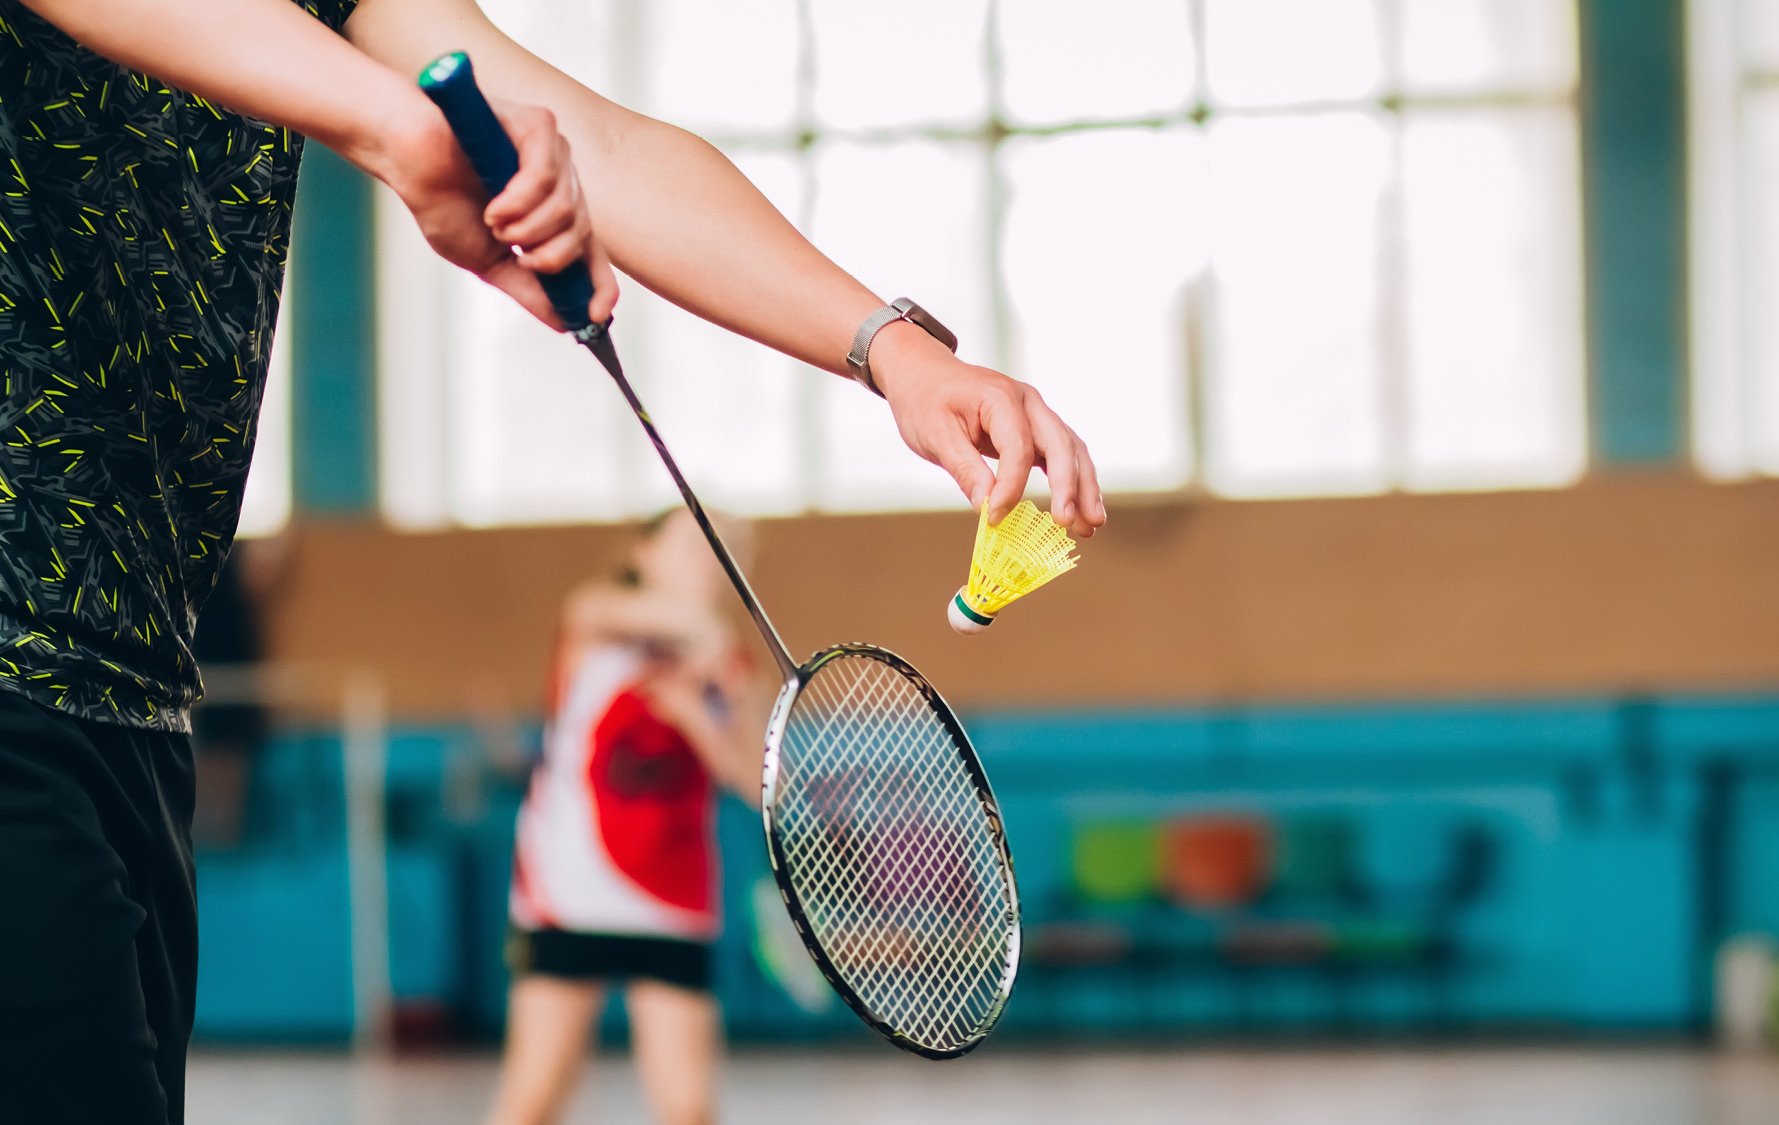 Bild zeigt Hand inkl. Badmintonball vor Abschlag durch den Schläger